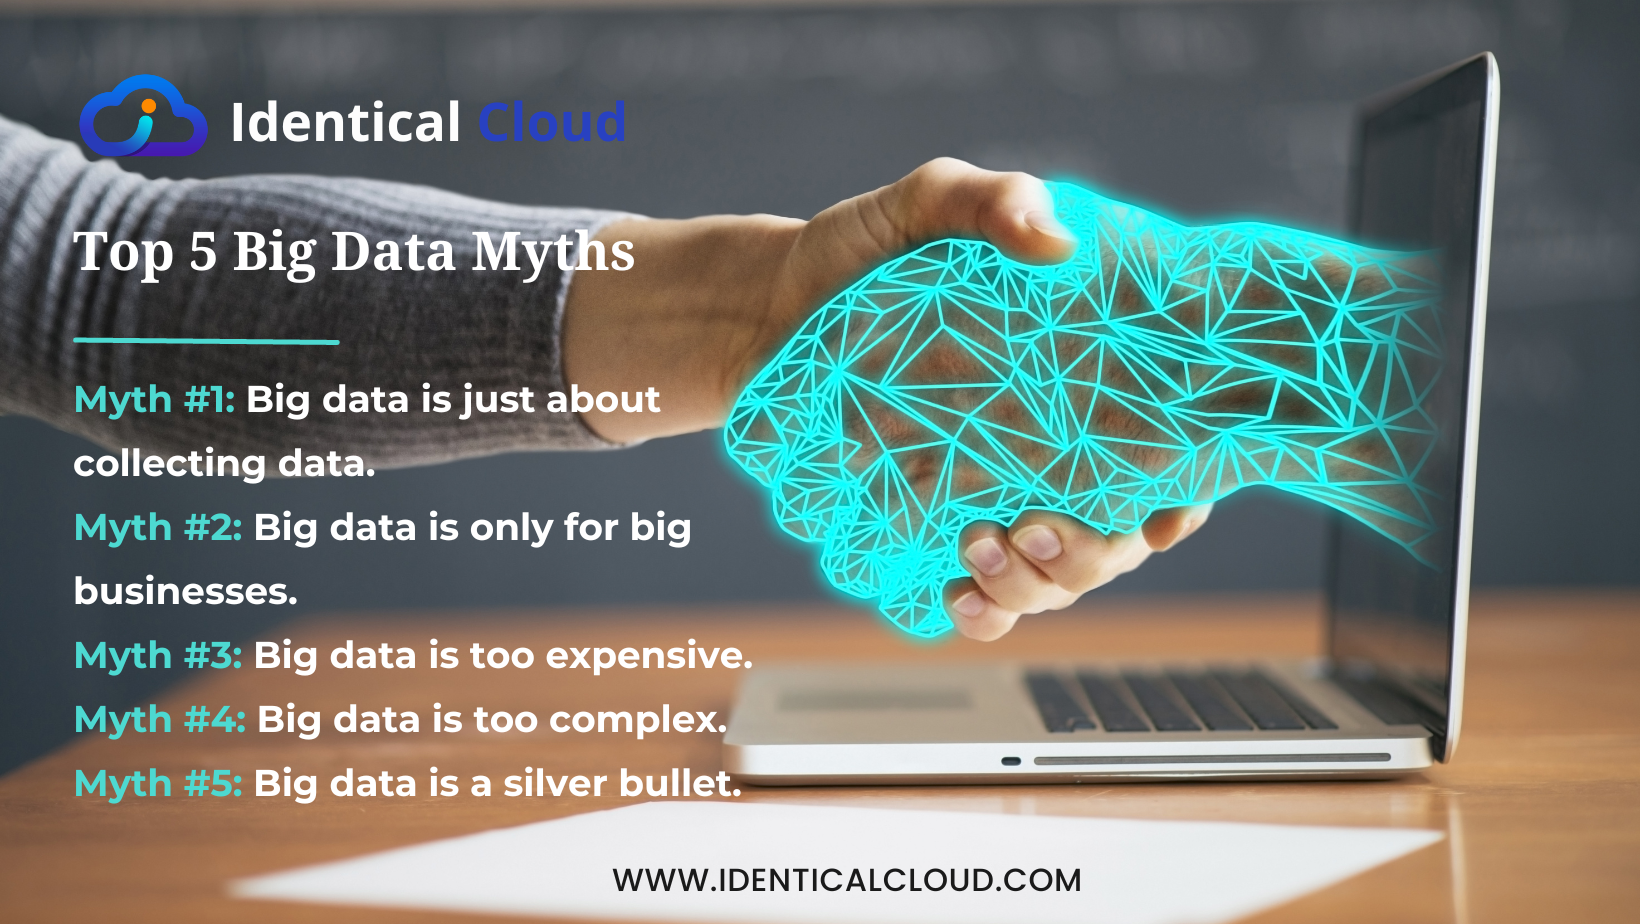 Top 5 Big Data Myths - identicalcloud.com